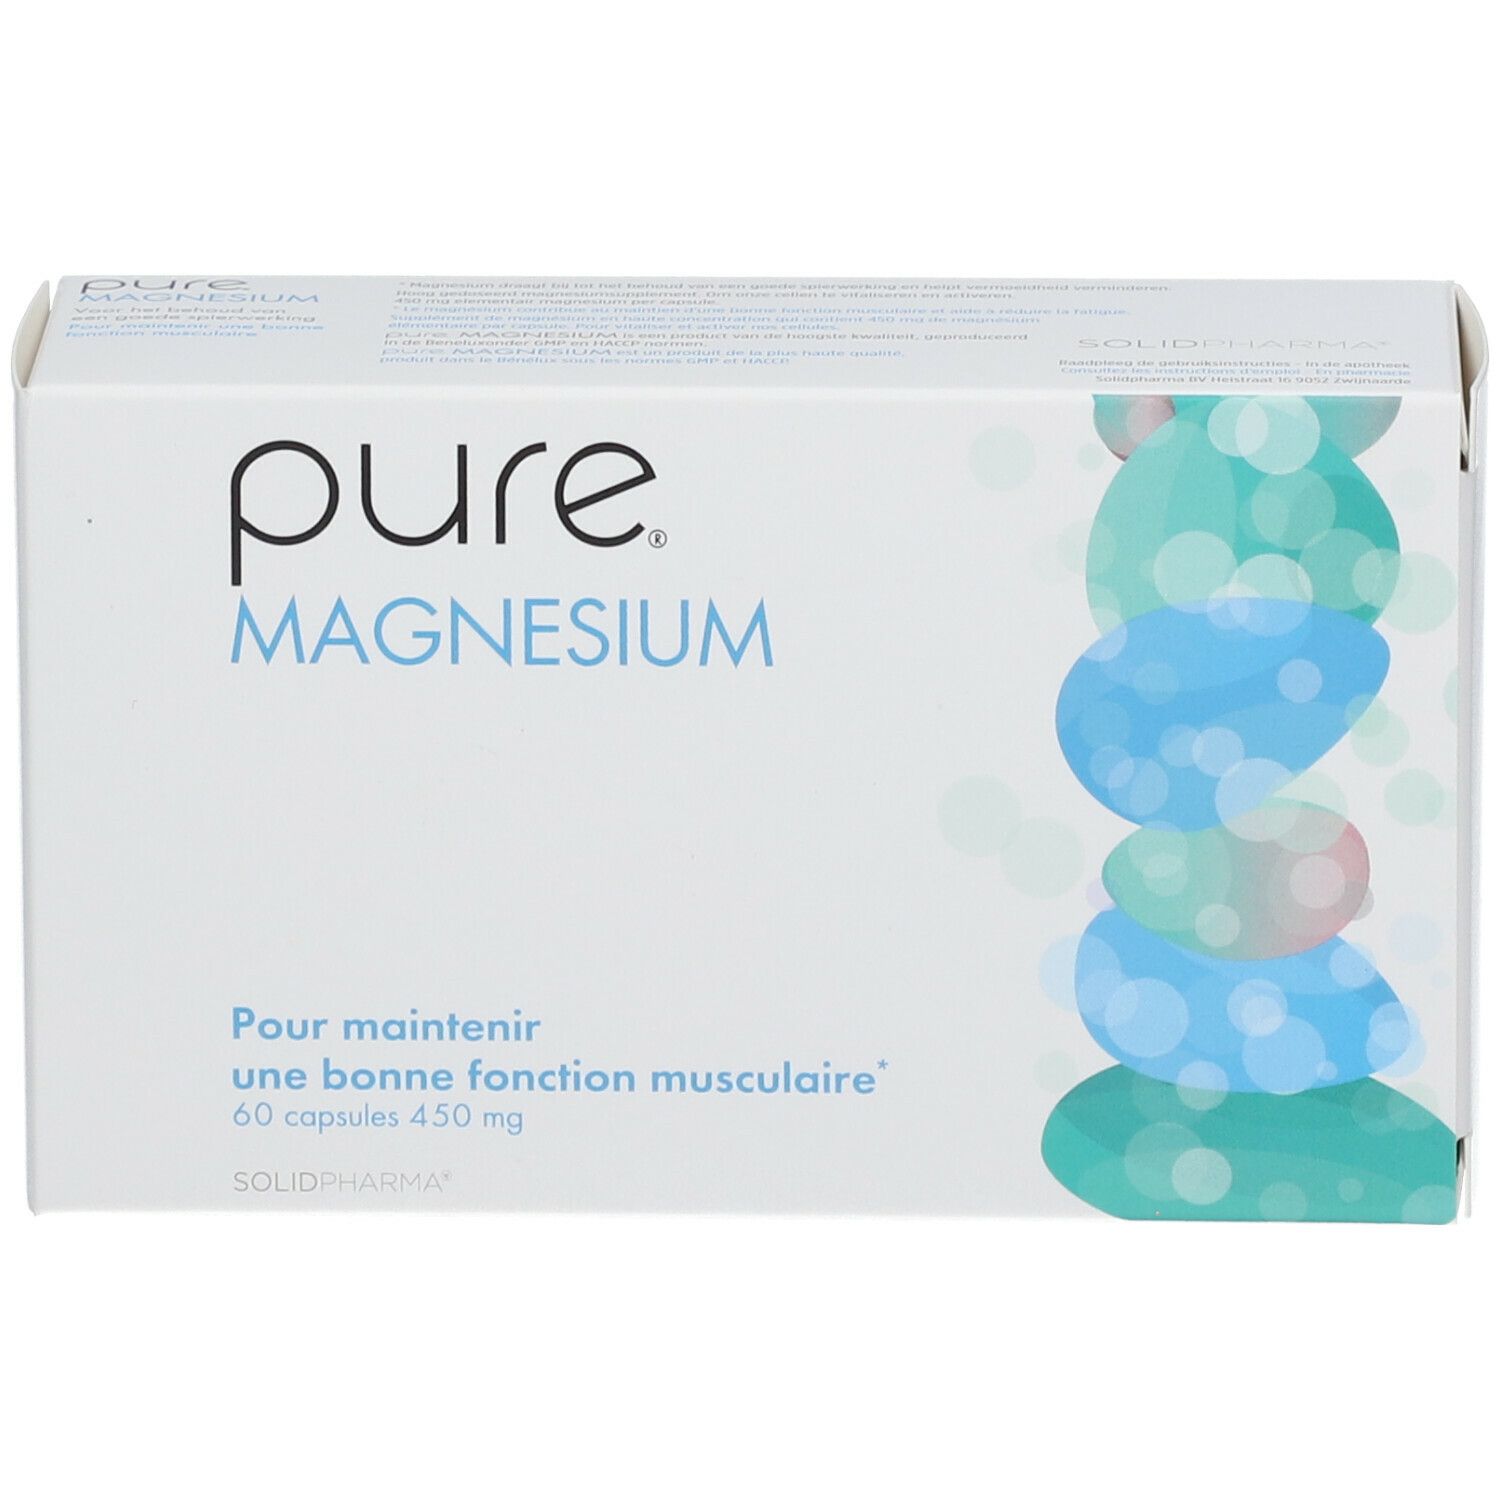 Pure® Magnesium